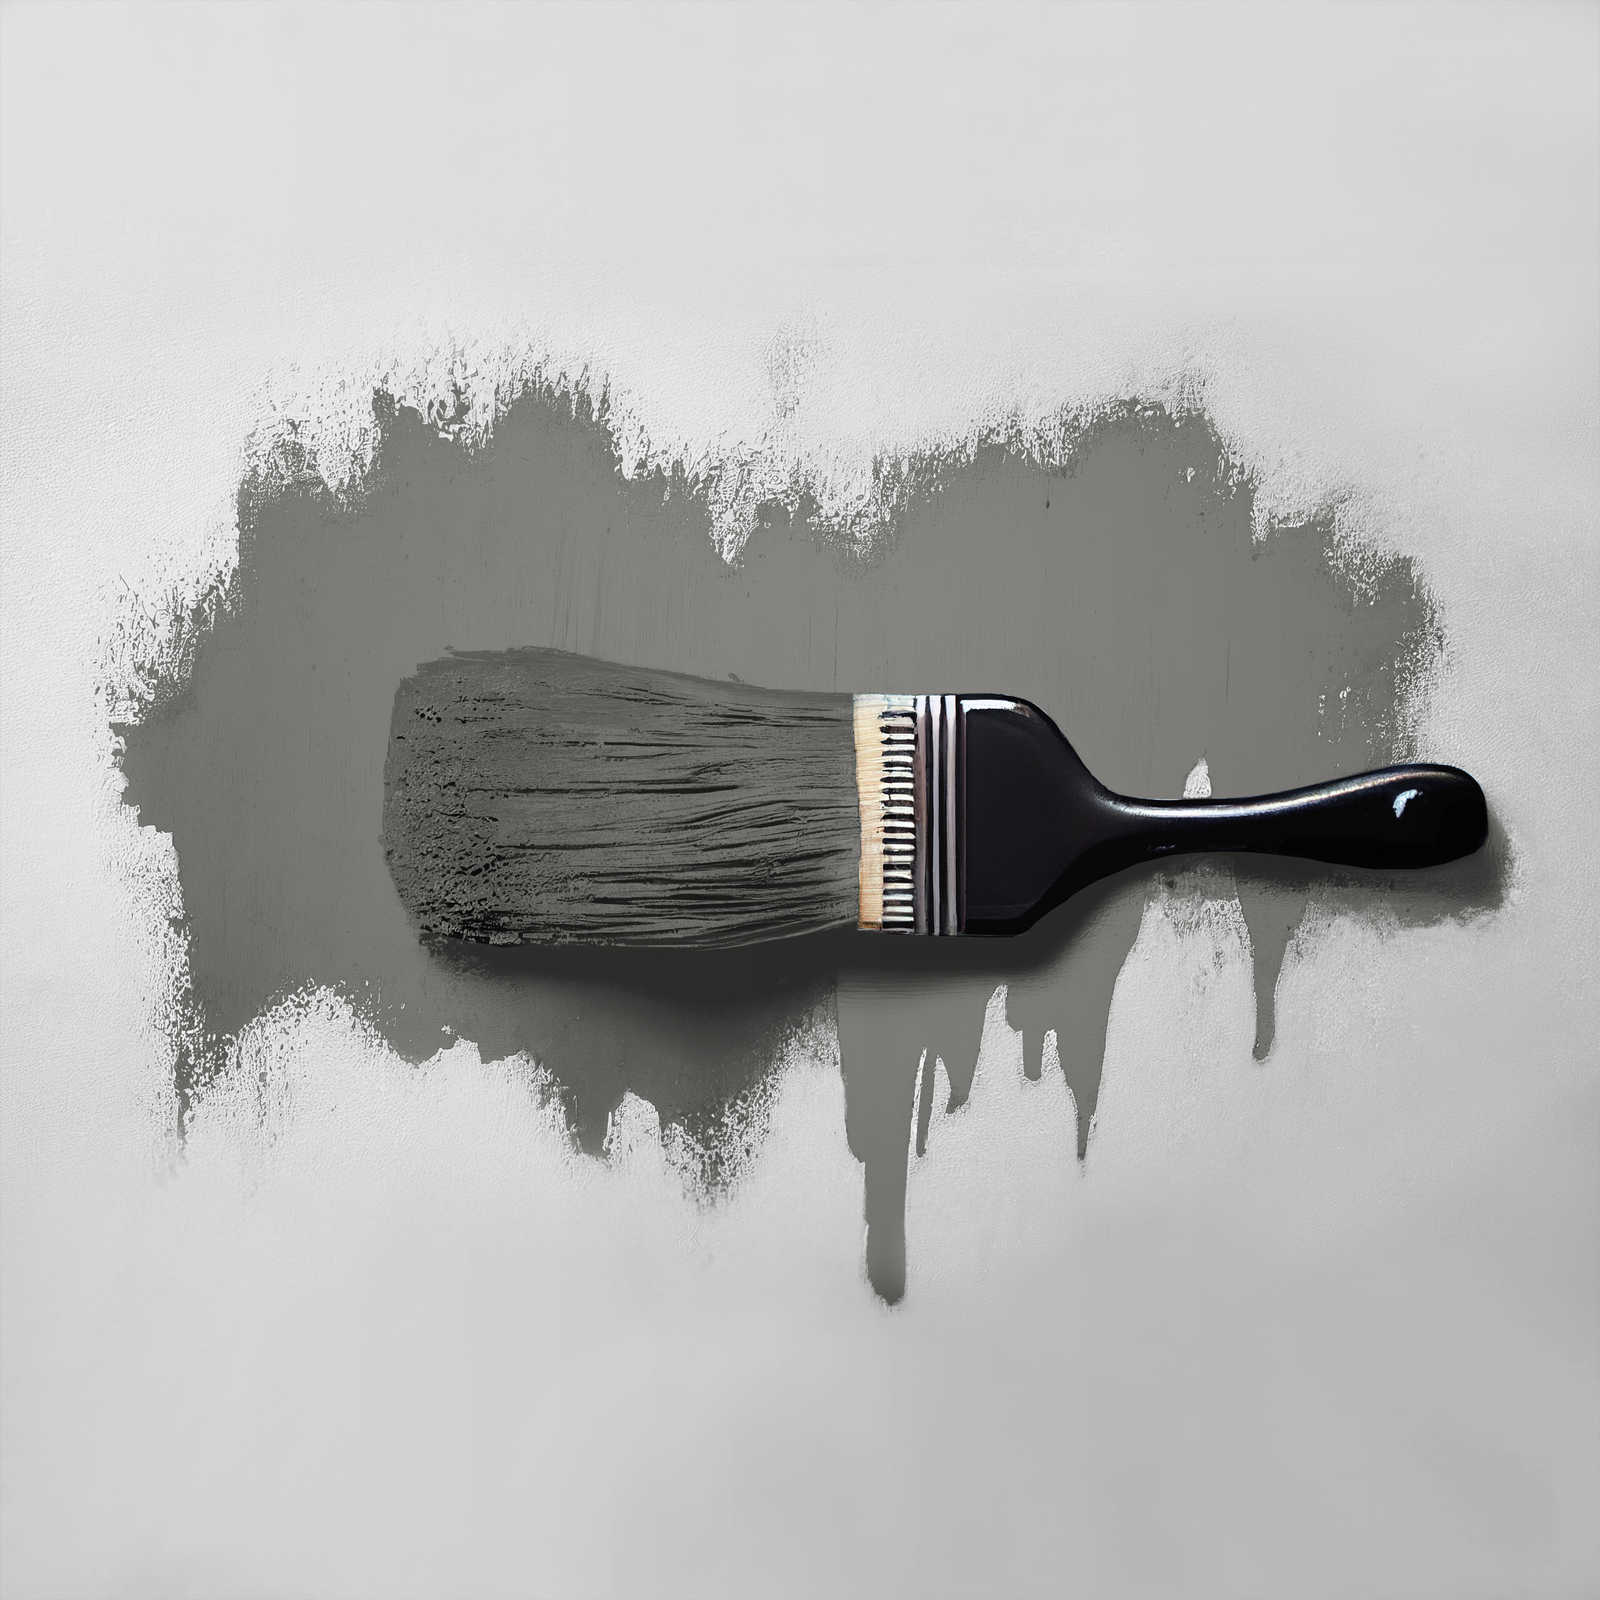             Peinture murale TCK1013 »Poised Pepper« en gris foncé – 5,0 litres
        